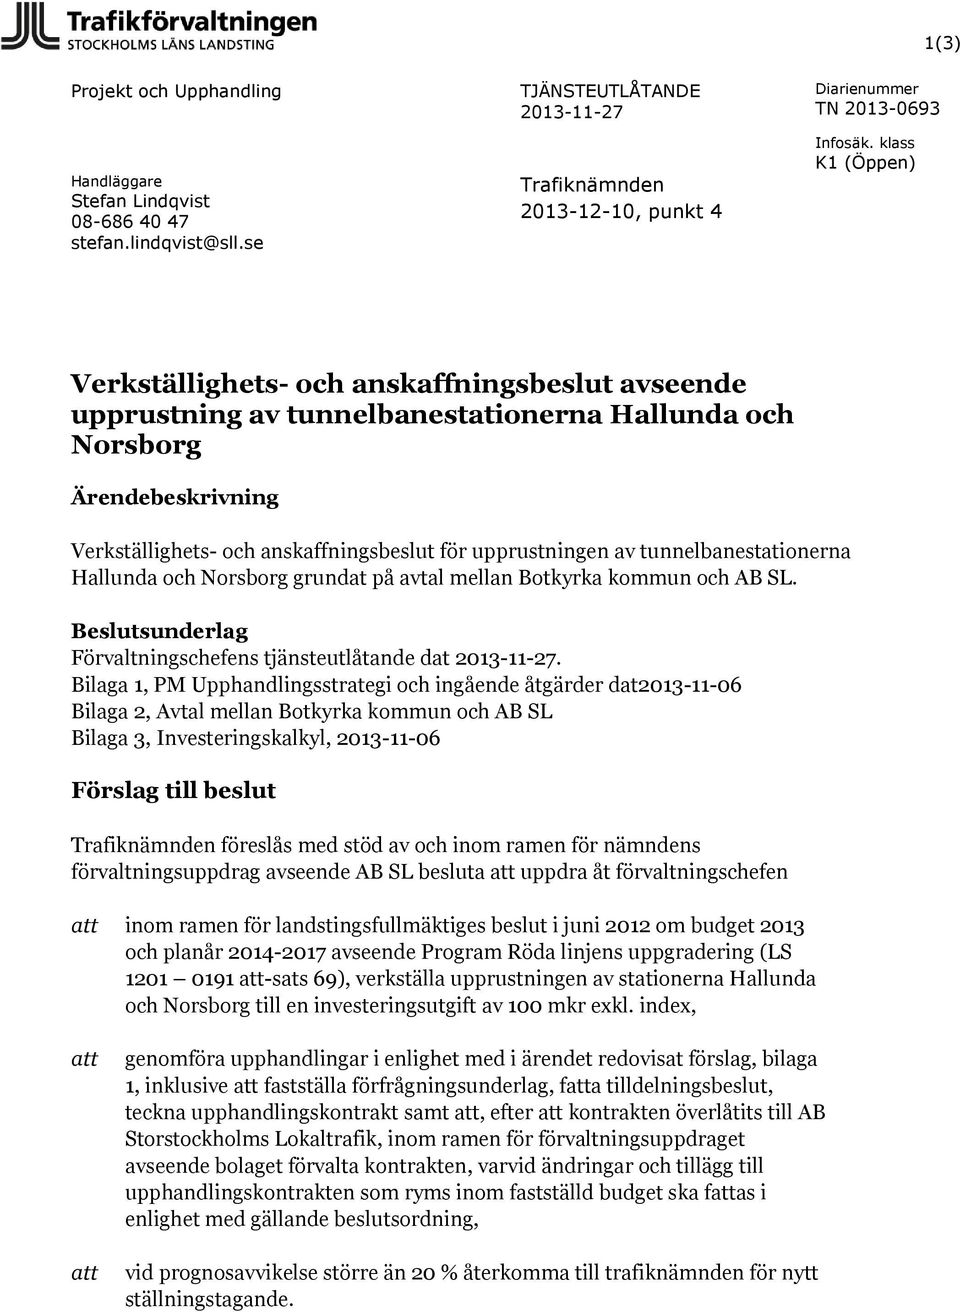 upprustningen av tunnelbanestationerna Hallunda och Norsborg grundat på avtal mellan Botkyrka kommun och AB SL. Beslutsunderlag Förvaltningschefens tjänsteutlåtande dat 2013-11-27.